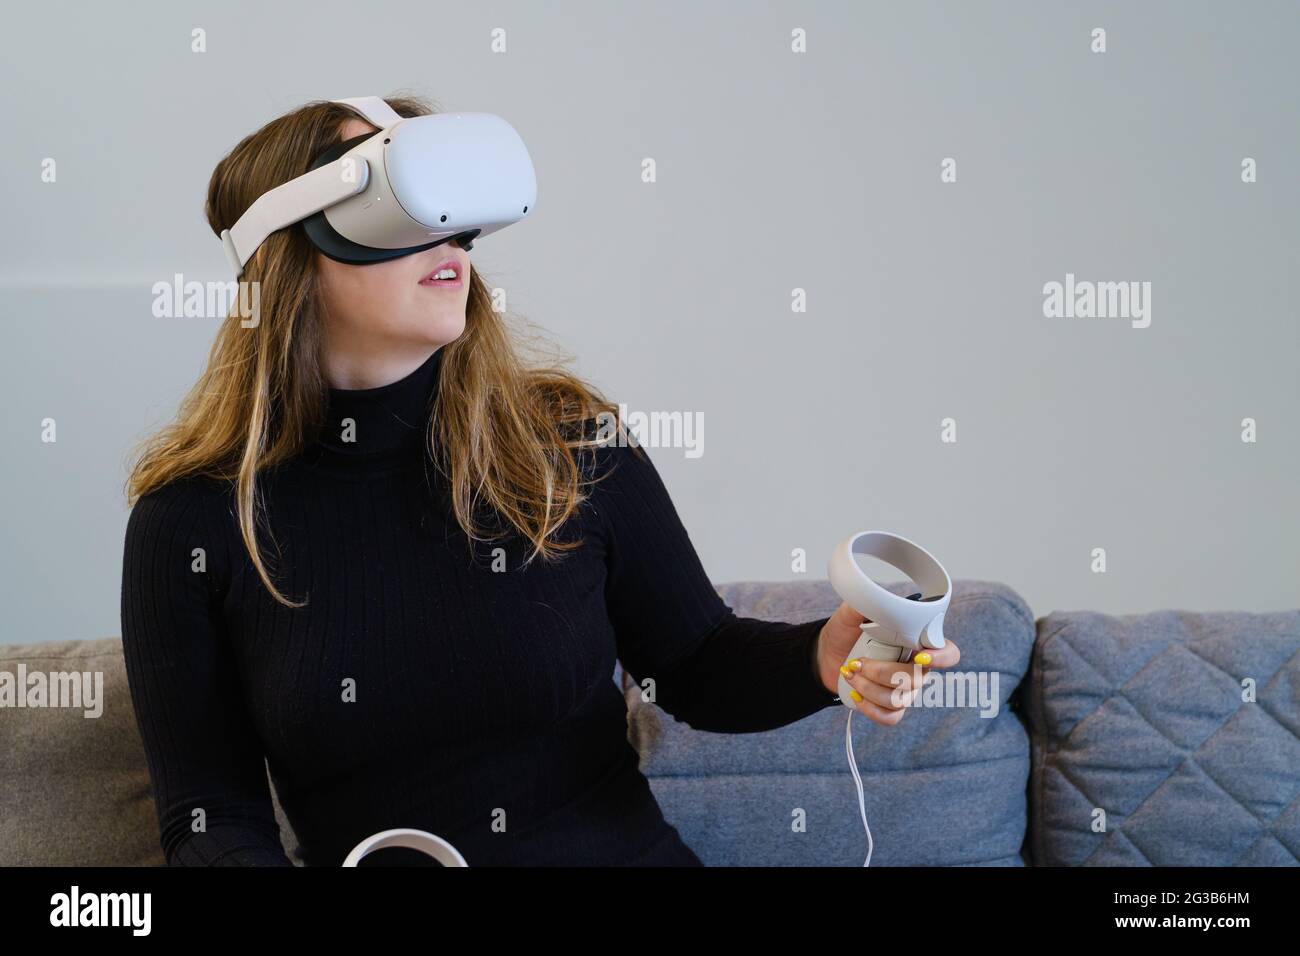 ANVERS, BELGIQUE - 08 avril 2021 : une jeune femme essaie la quête 2 d'Oculus pour une expérience virtuelle. Assis dans un canapé, avec un dessus noir. Banque D'Images